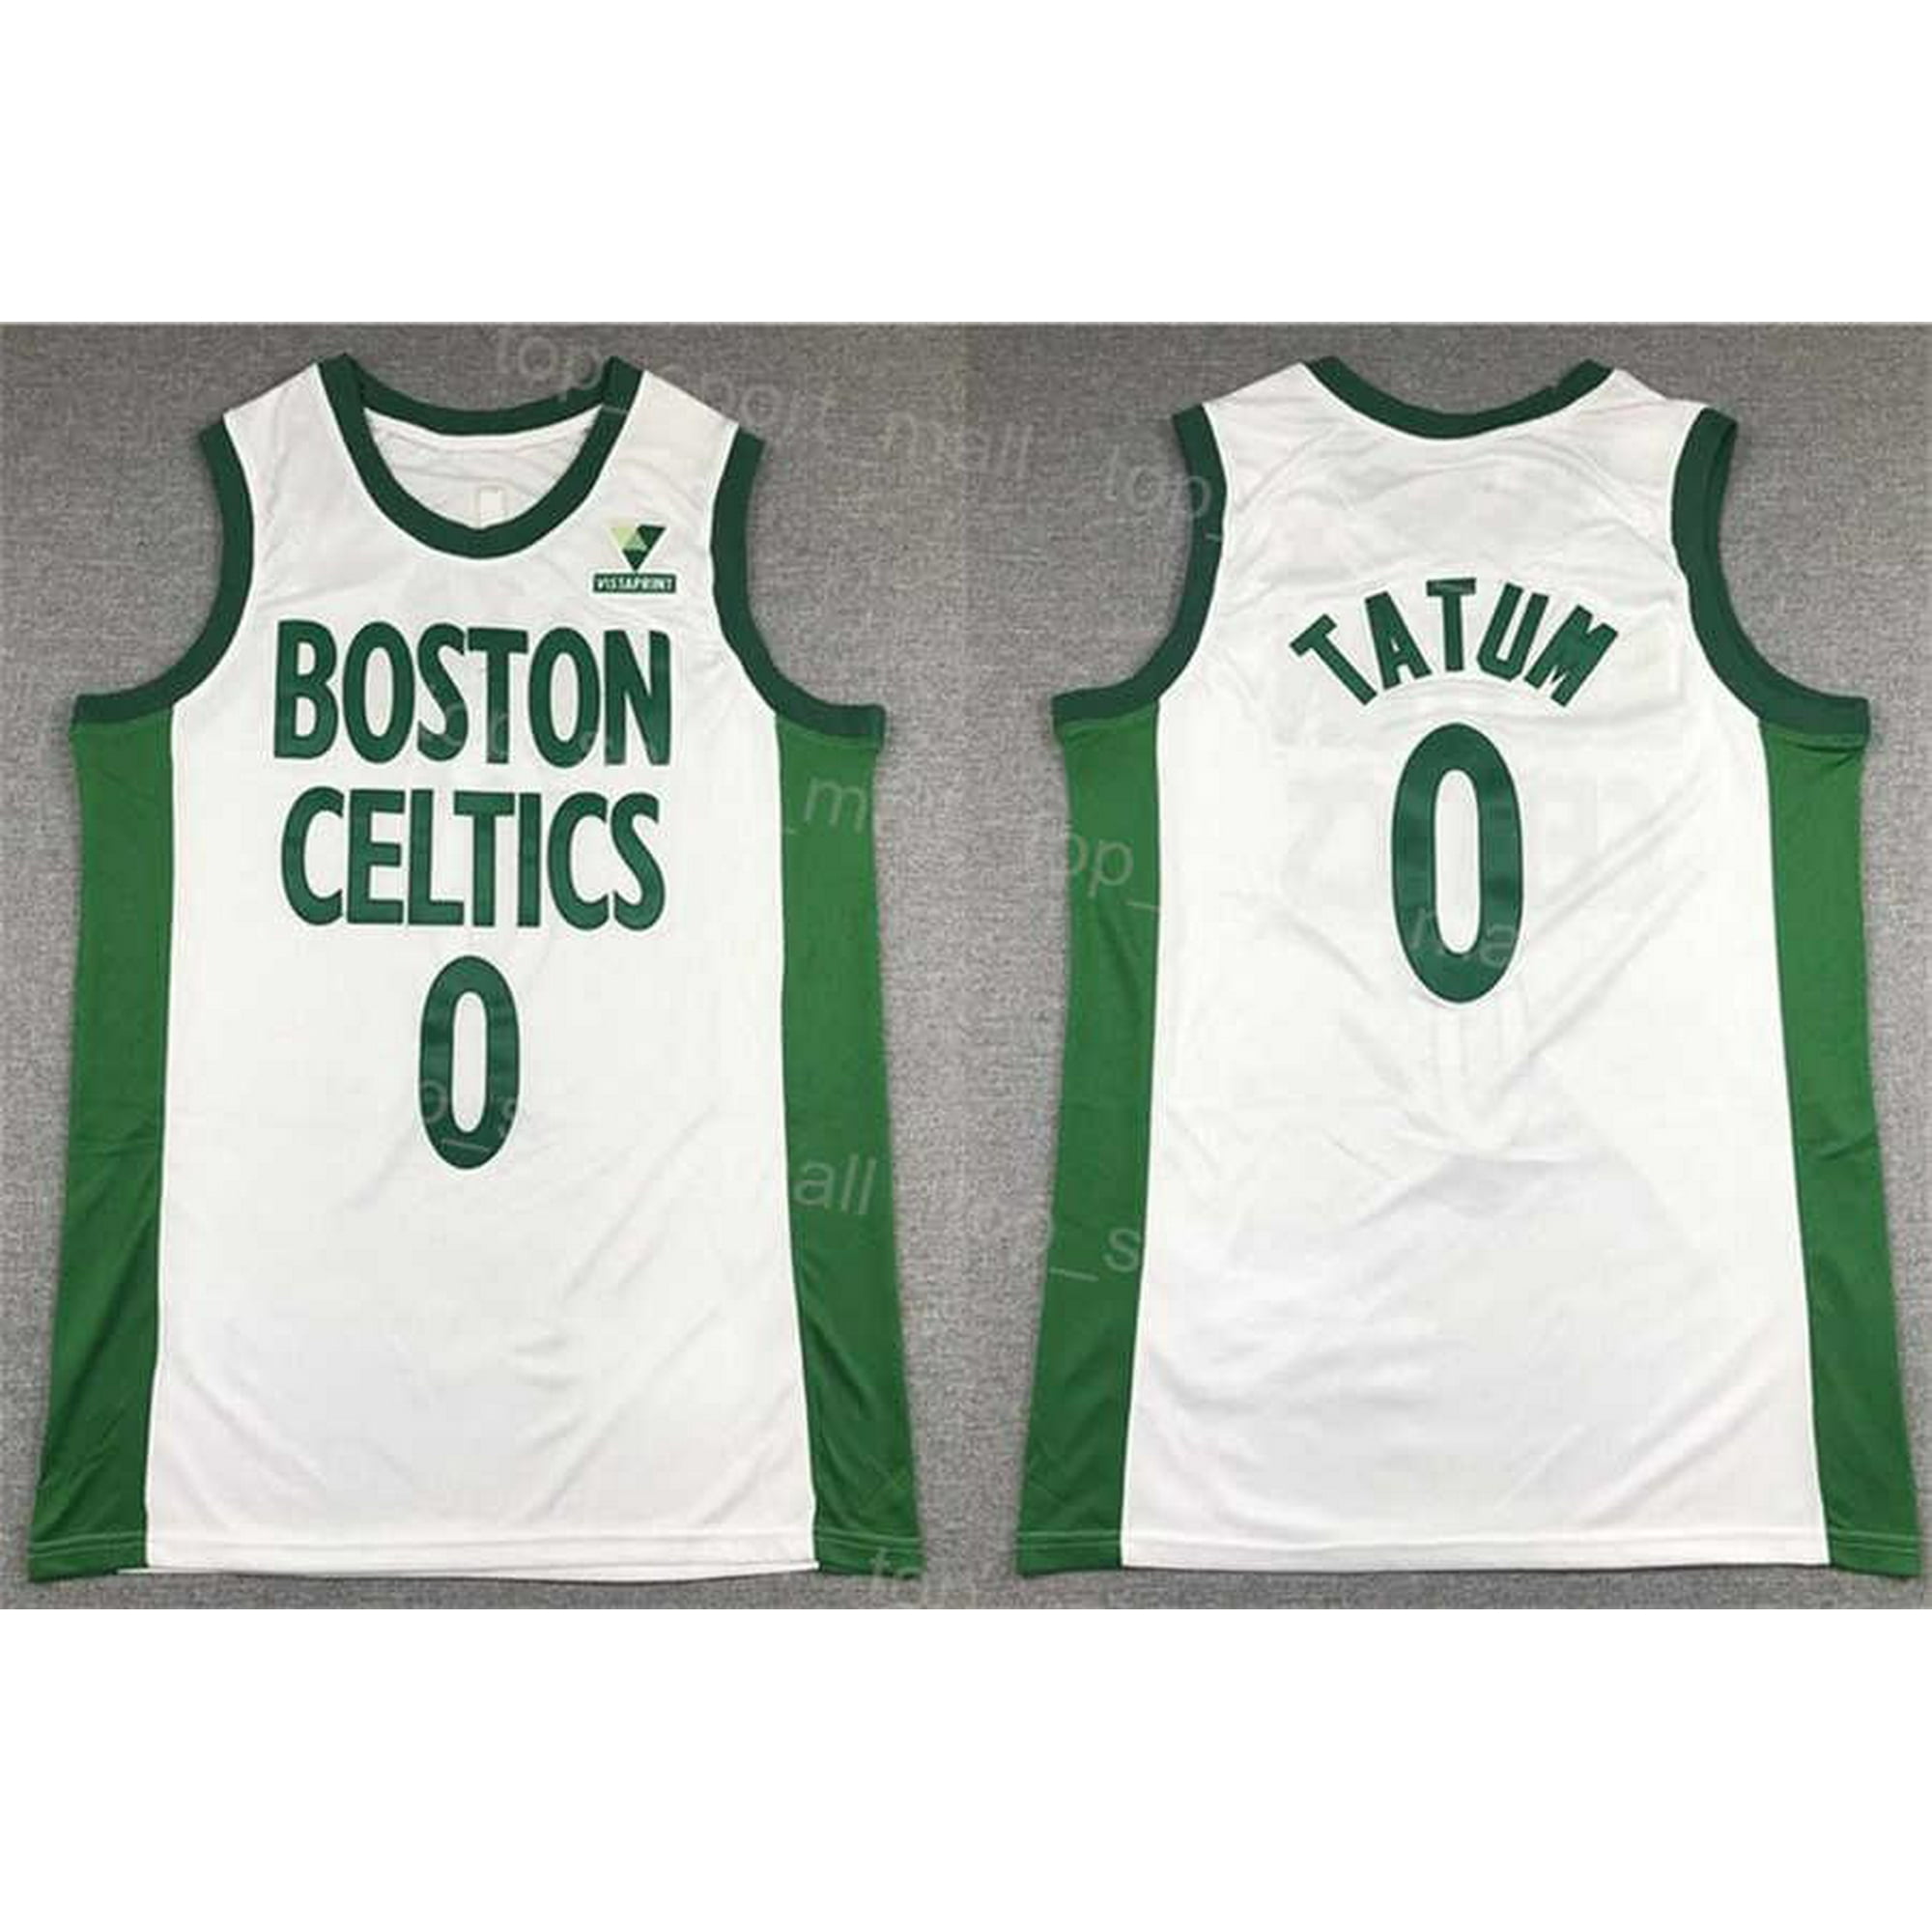 Official Jayson Tatum Boston Celtics Jerseys, Celtics City Jersey, Jayson  Tatum Celtics Basketball Jerseys